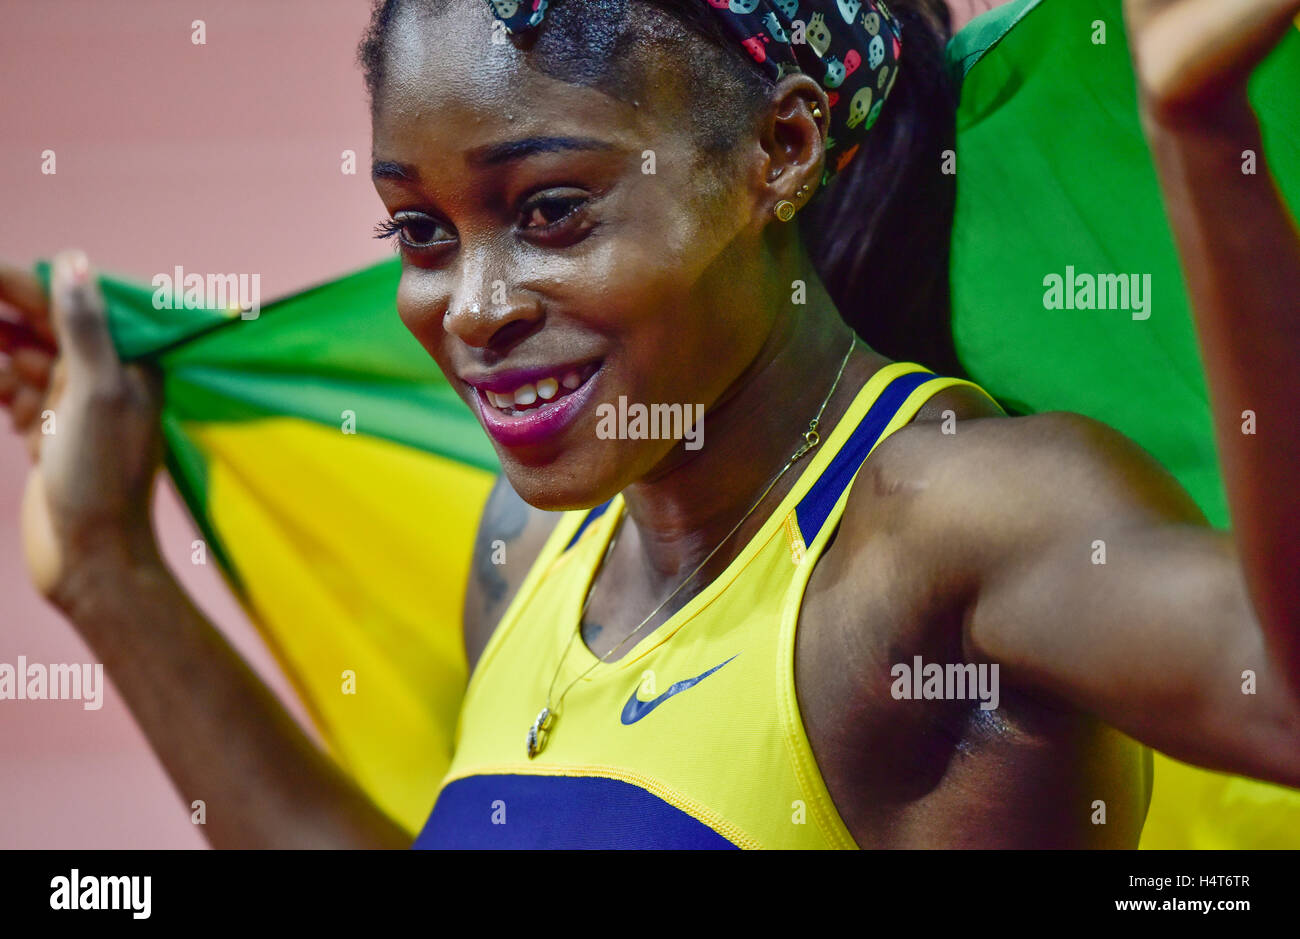 Zurich, Suisse - le 3 septembre 2015 : Le sprinter jamaïcain Elaine Thompson pose avec le drapeau jamaïcain après avoir remporté le women's 100m la chaleur à la Zurich 2015 IAAF Diamond League meeting d'athlétisme. Banque D'Images